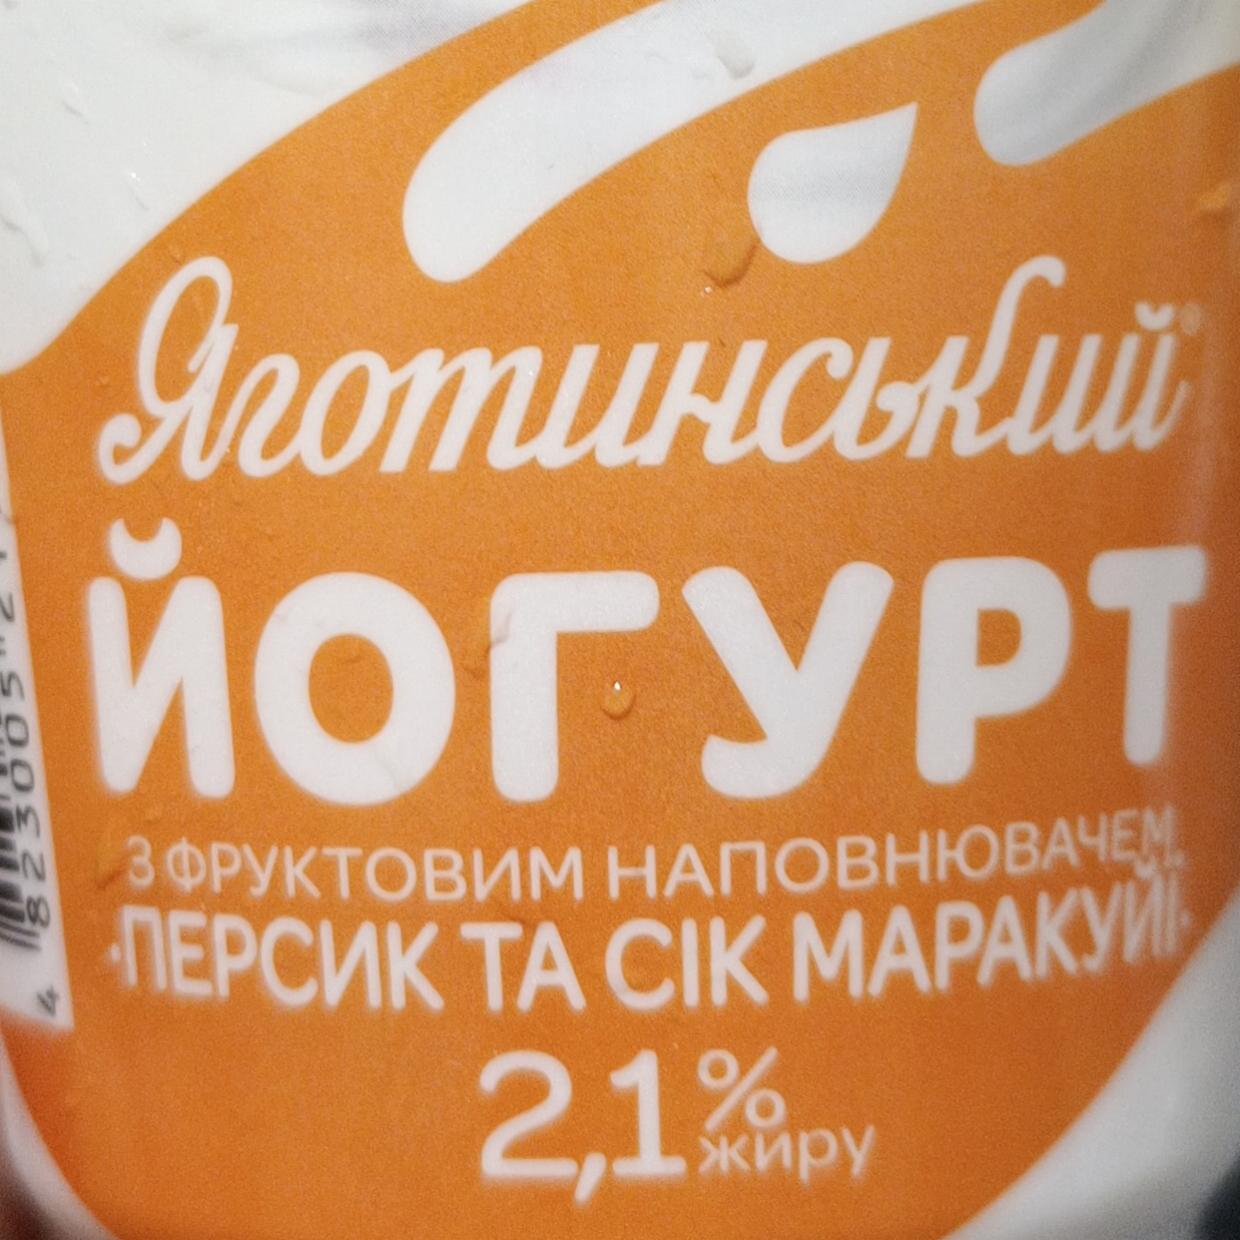 Фото - Йогурт 2.1% Персик и сок маракуйя Яготинський